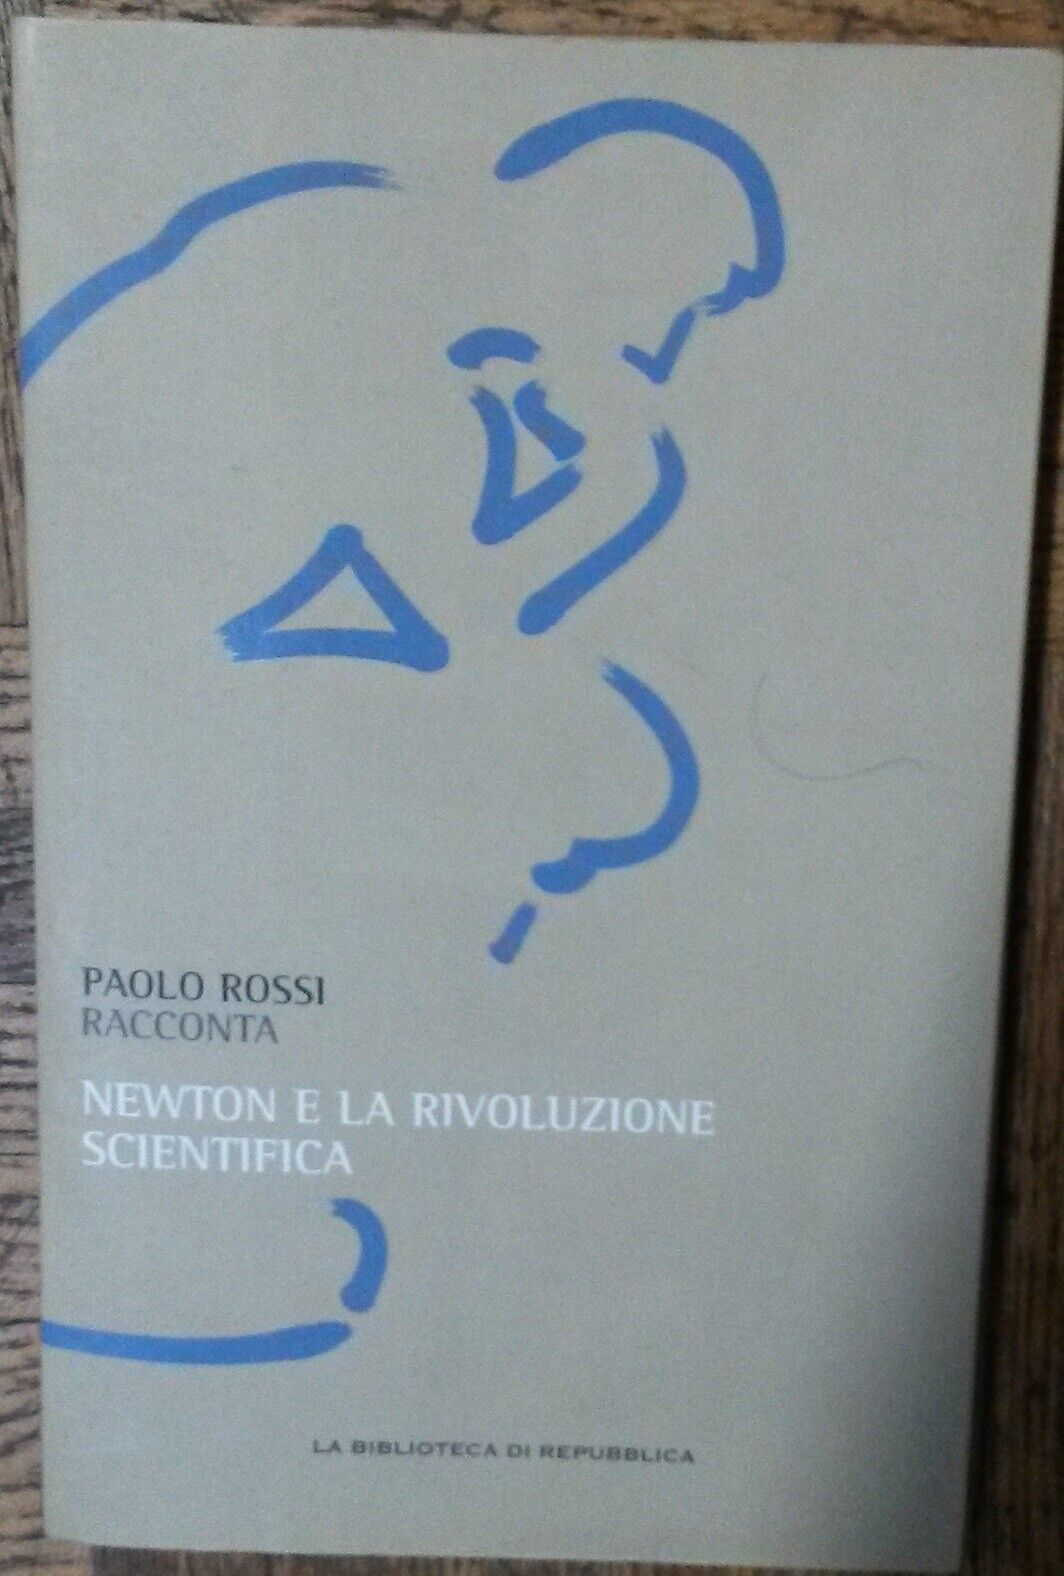 Newton e la rivoluzione scientifica-PaoloRossi-GruppoEditorialeL'Espresso,2011-R